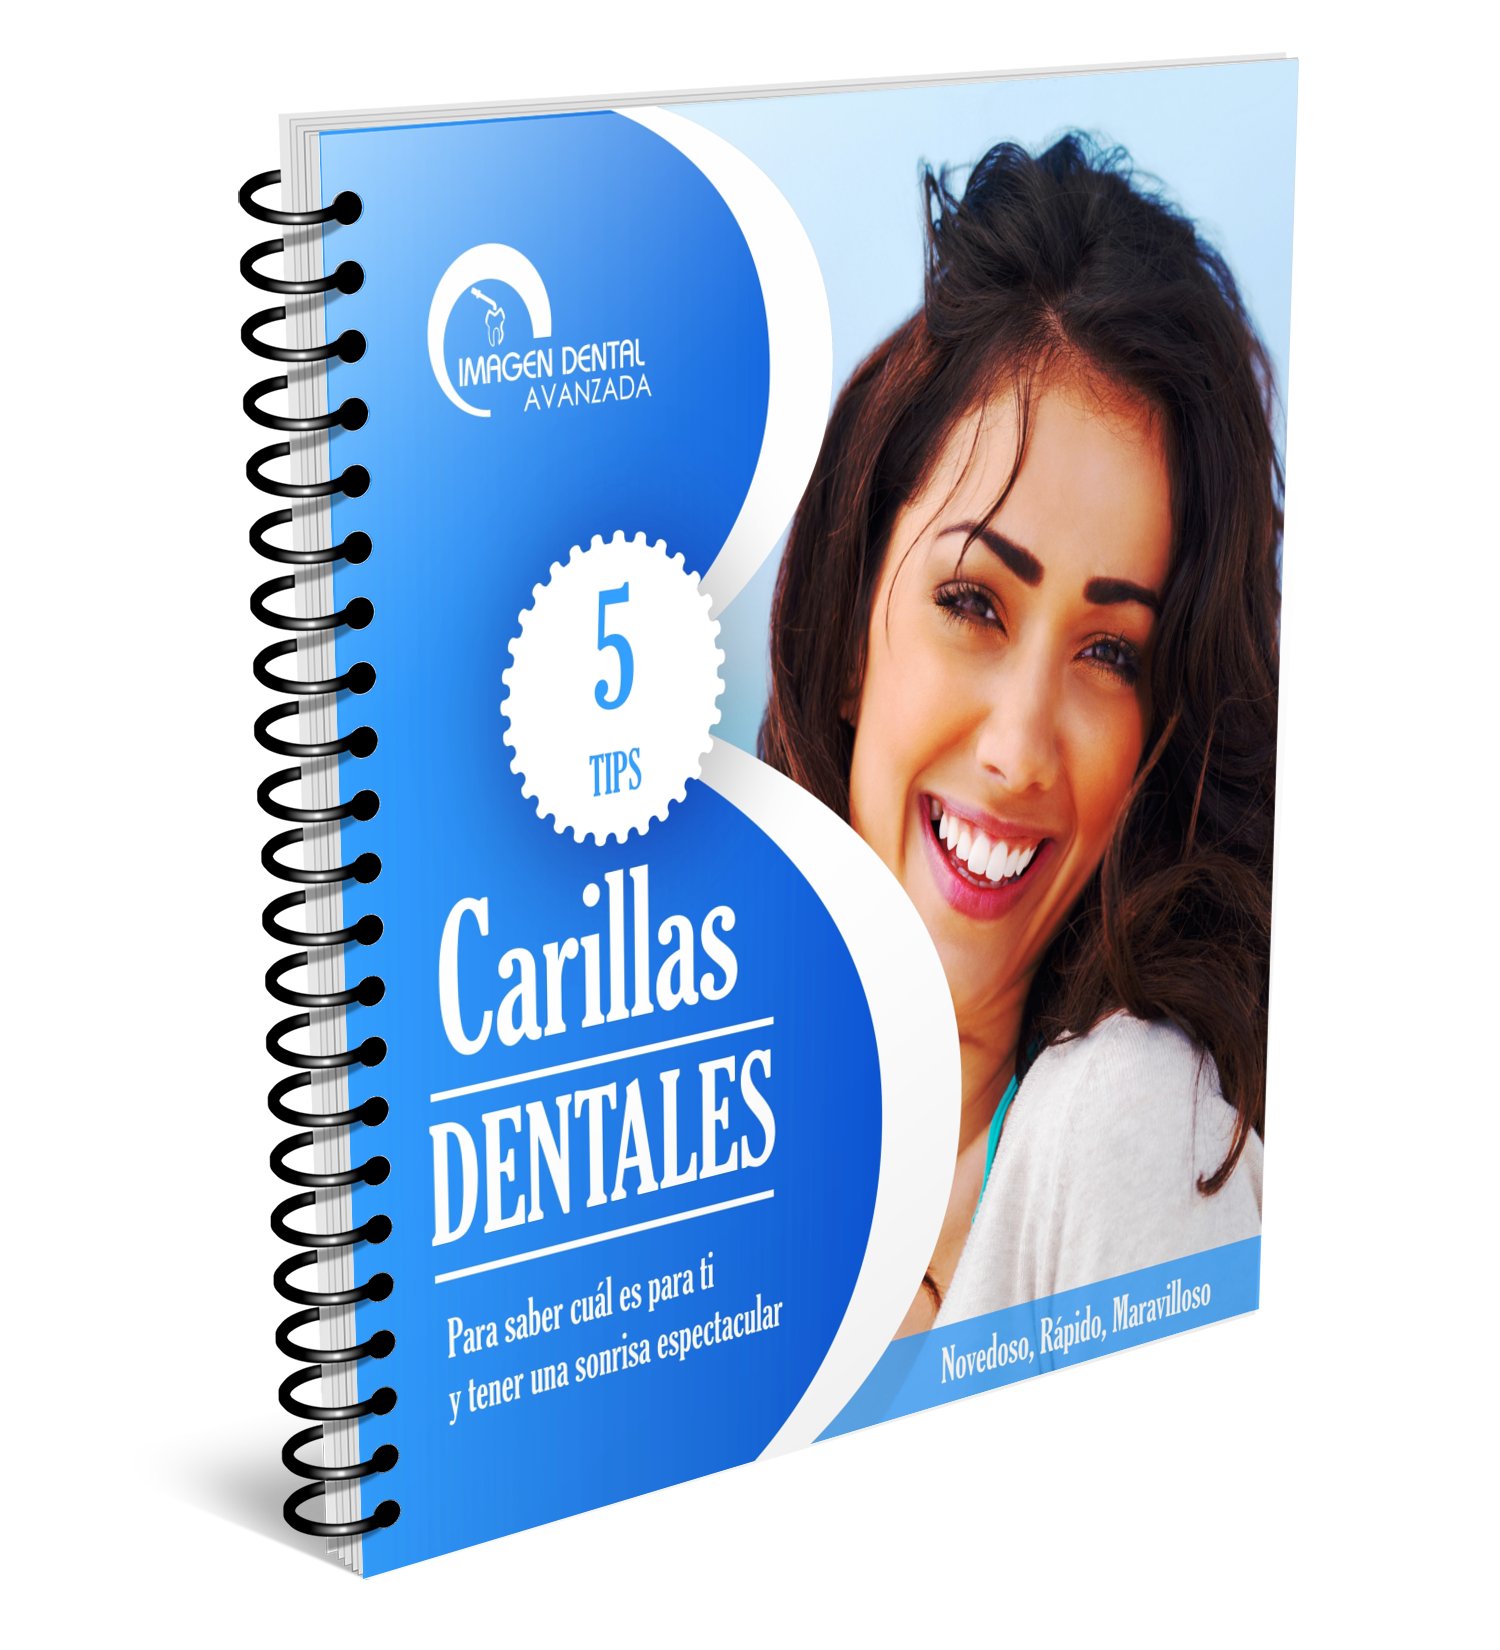 Imagen Dental Avanzada ebook carillas dentales